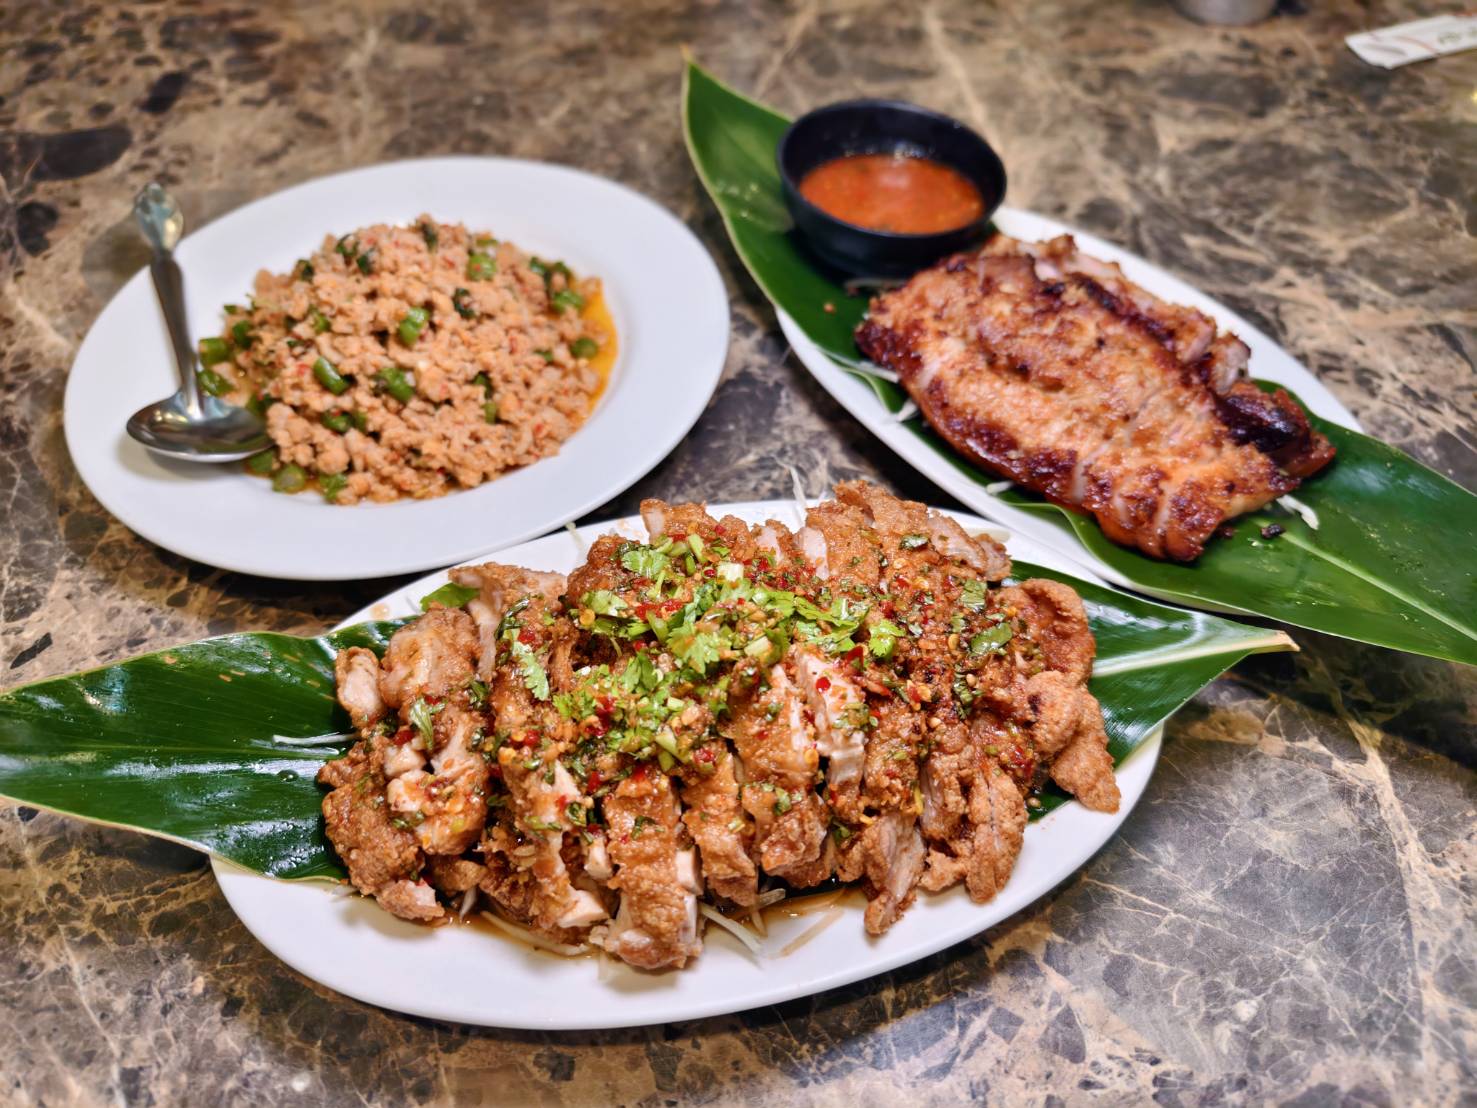 [花蓮美食]泰泰廚房-泰國人開的泰式餐廳  打拋豬是用嘎拋葉炒的 沒有九層塔沒有番茄  香料自己種  滿滿泰國滋味 泰泰廚房菜單 花蓮泰式料理